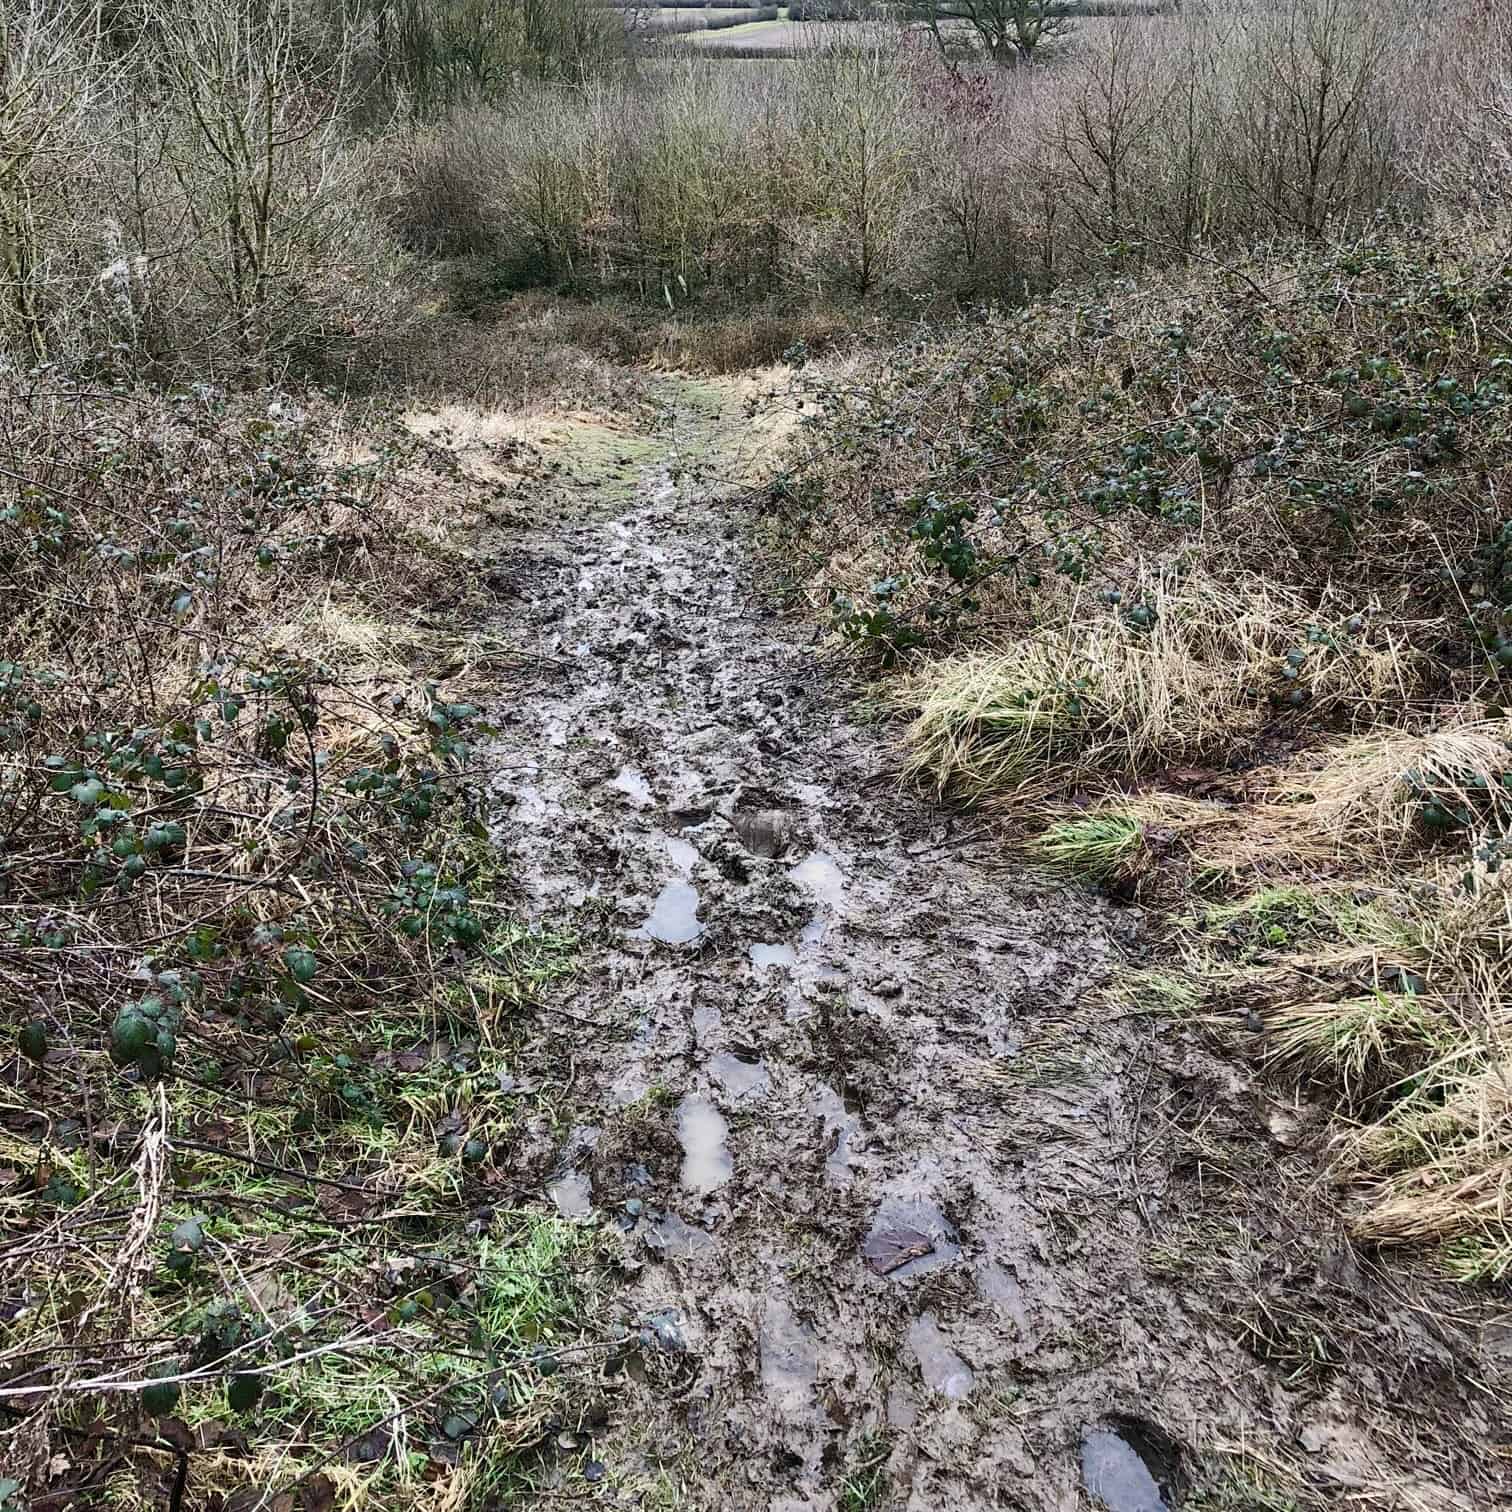 Extremely muddy footpaths near High Gaterley.